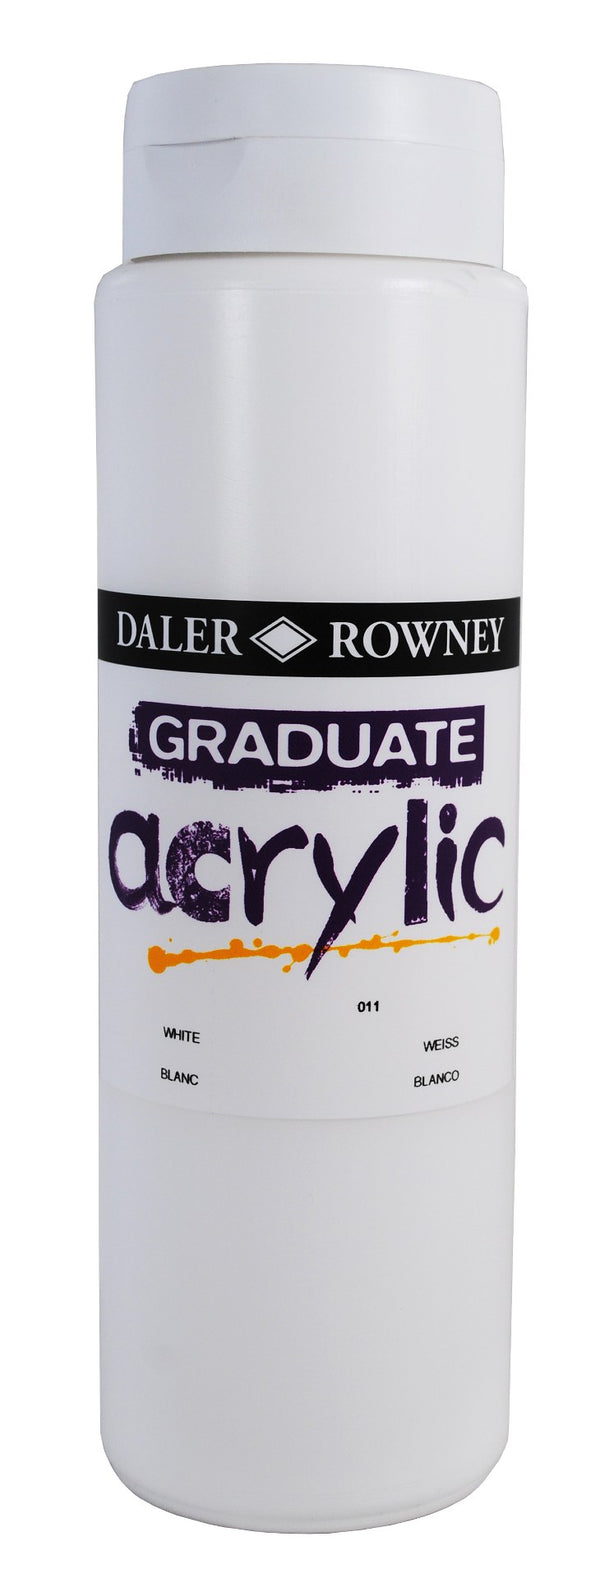 Daler Rowney Graduate Acrylic Paint 1 Litre White